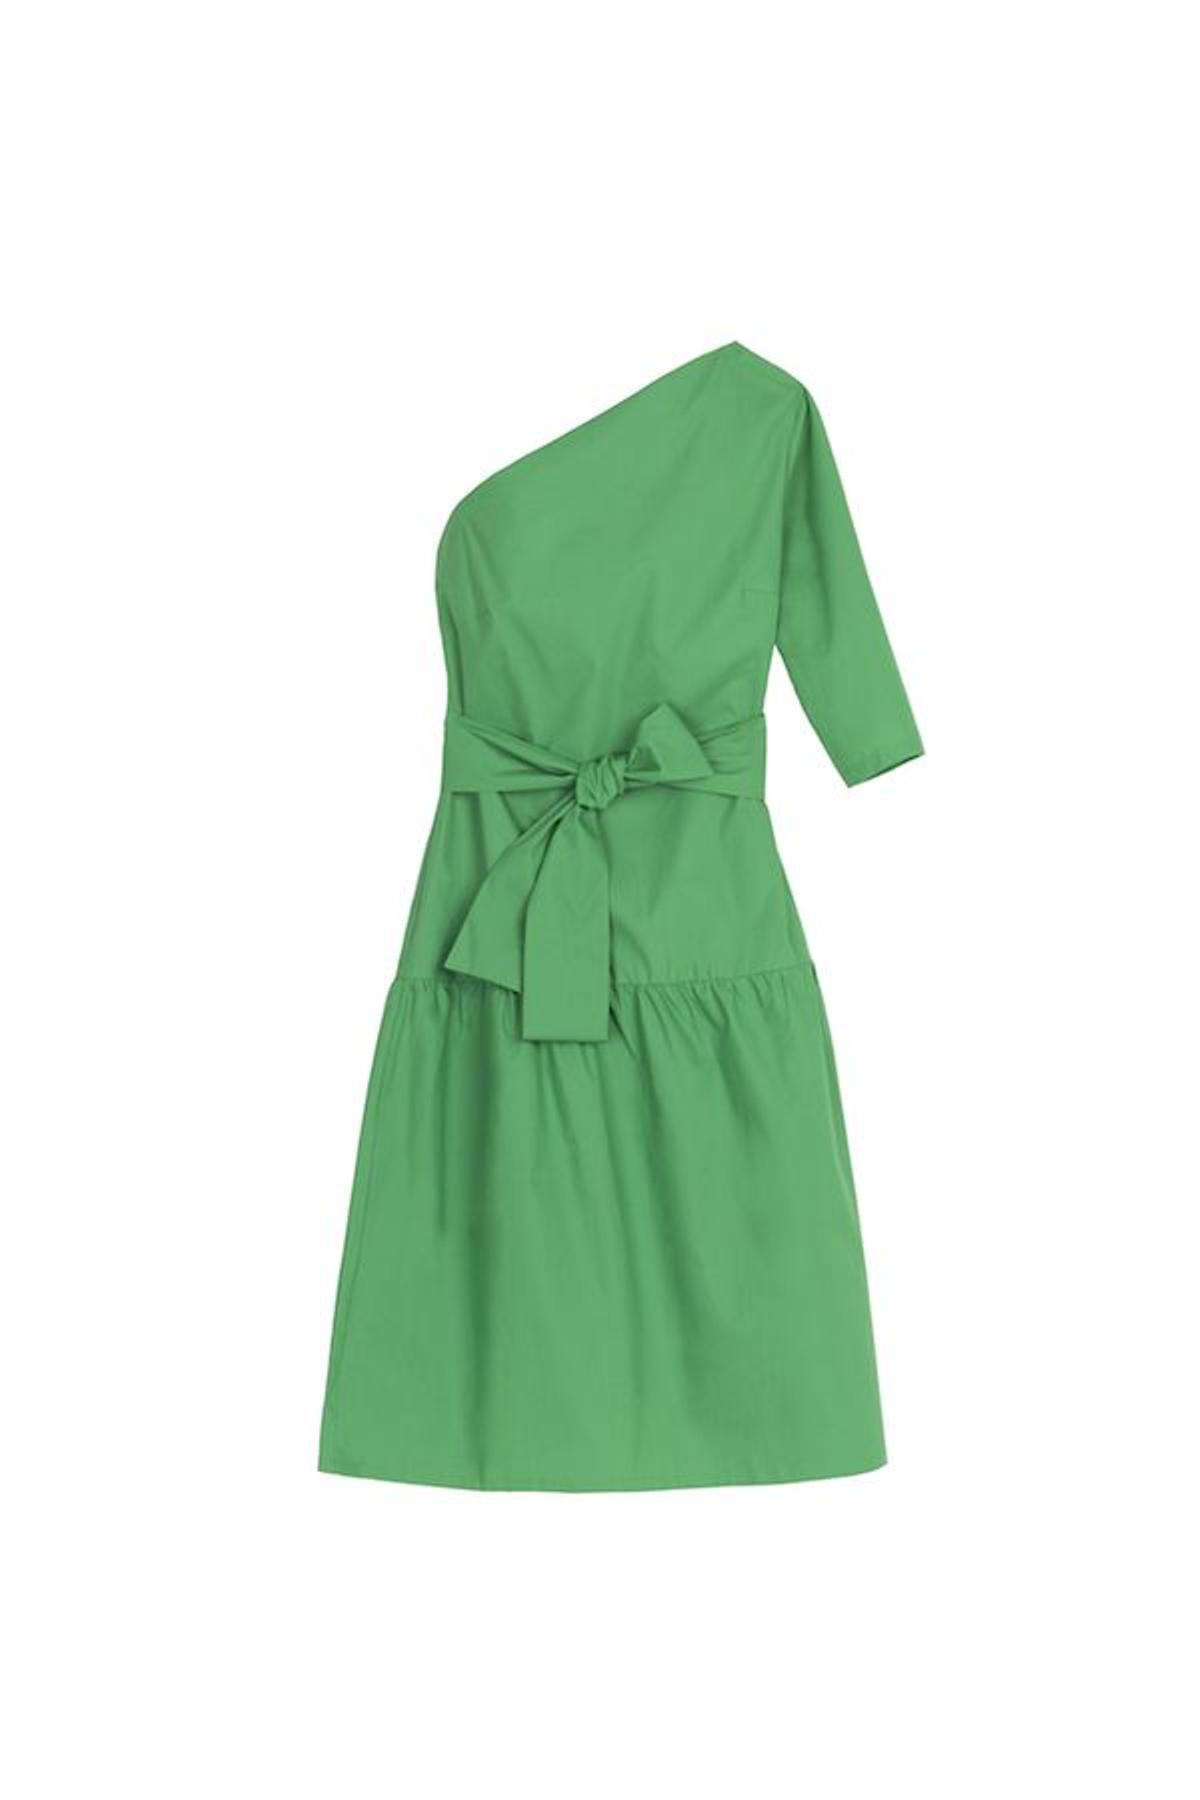 Verde que te quiero verde: el vestido asimétrico